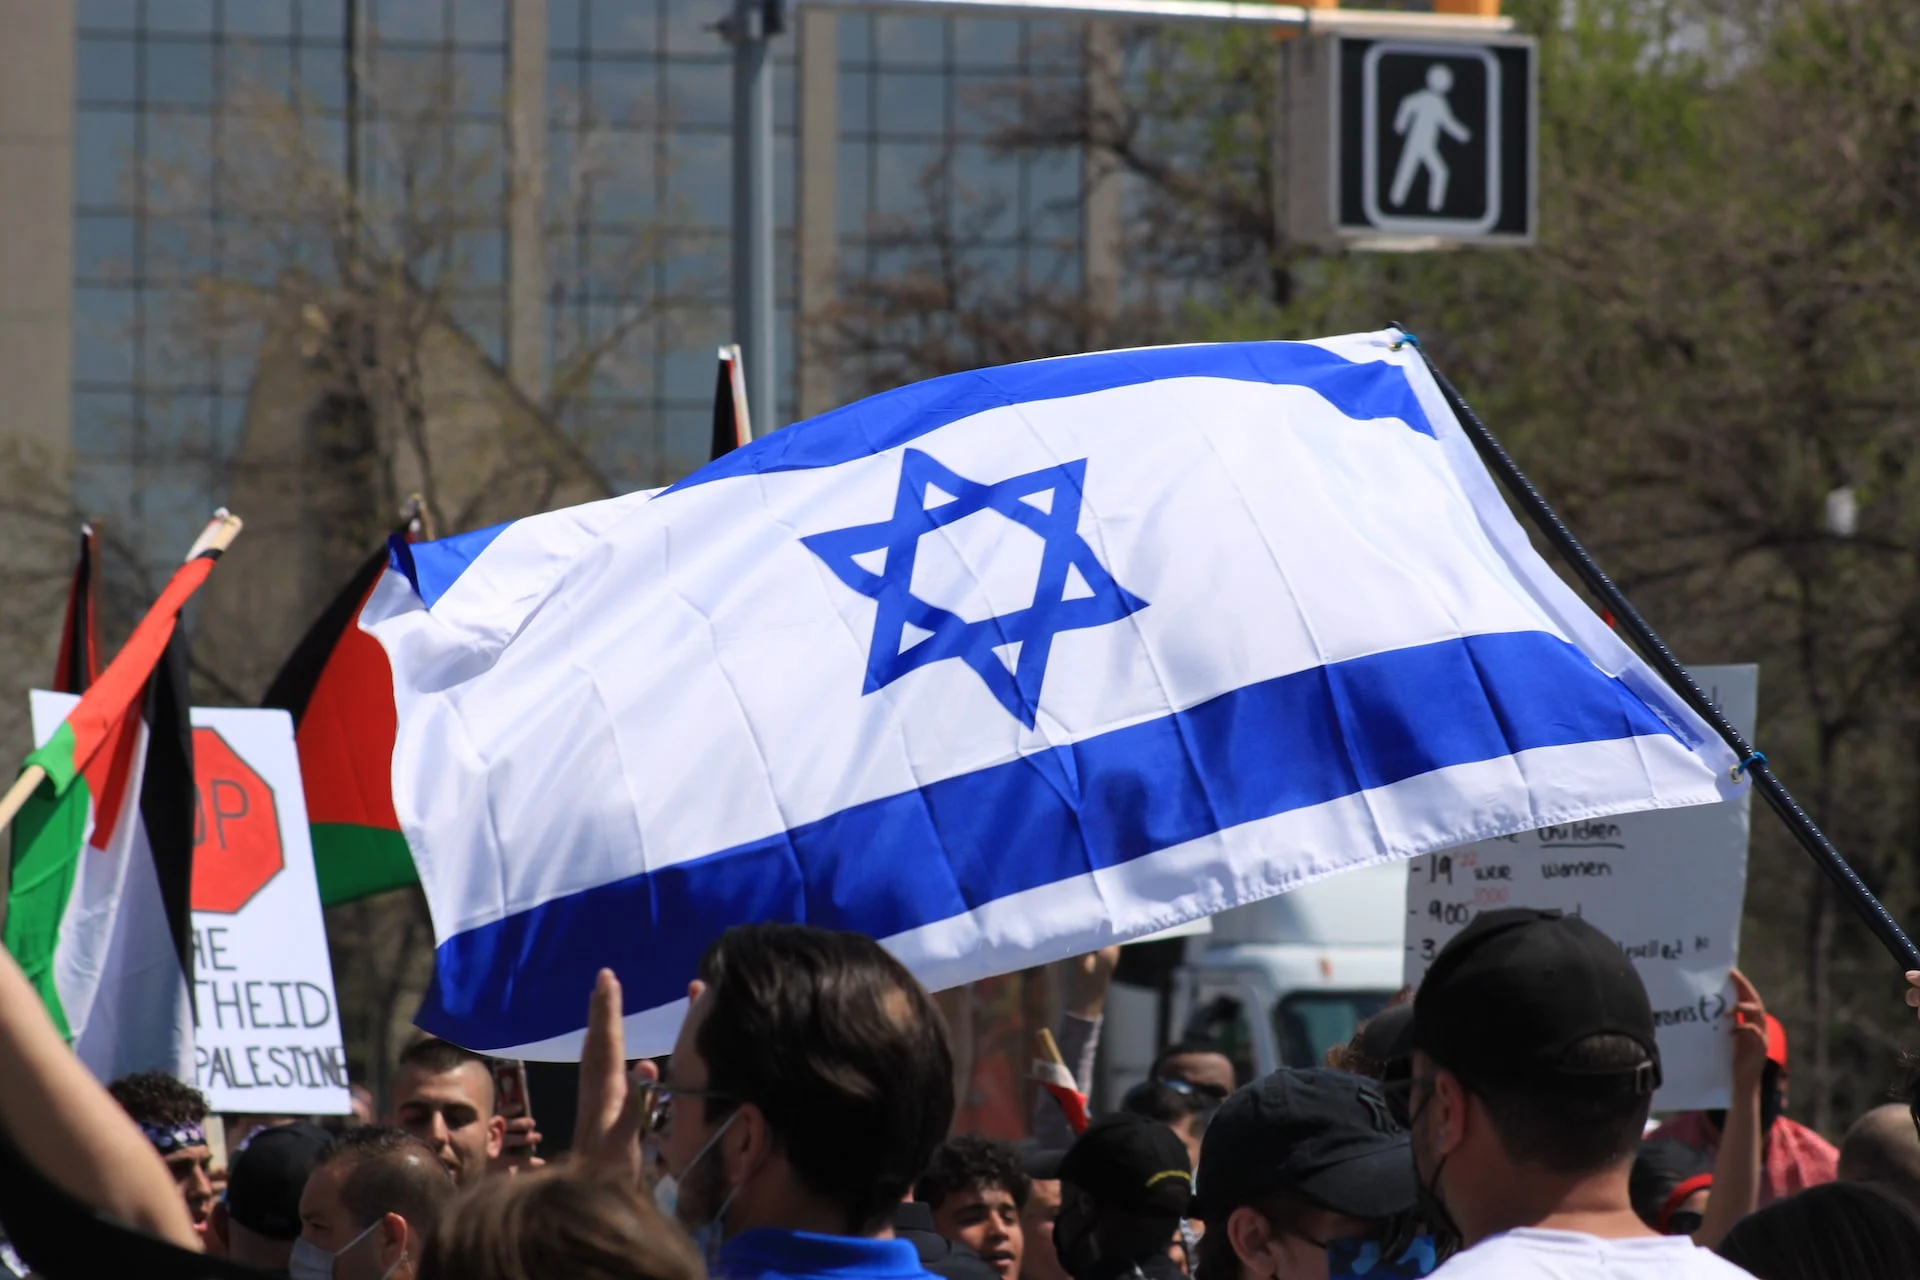 勒索软件攻击 Technion 大学以抗议科技裁员和以色列